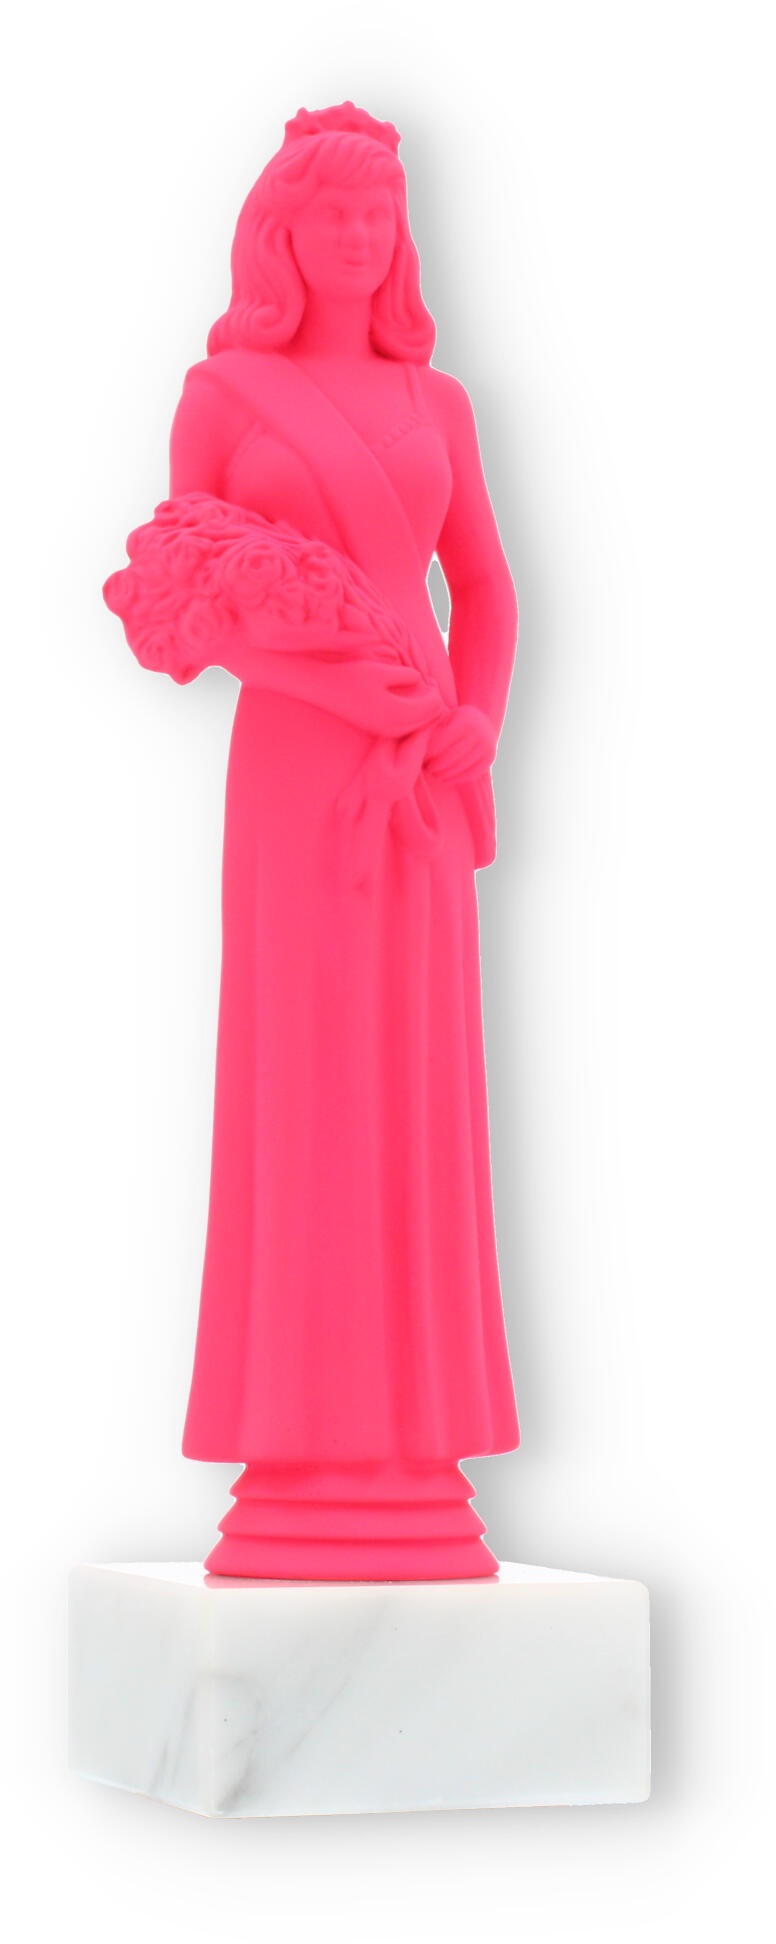 Pokal Kunststofffigur Schönheitskönigin pink auf weißem Marmorsockel 23,7cm